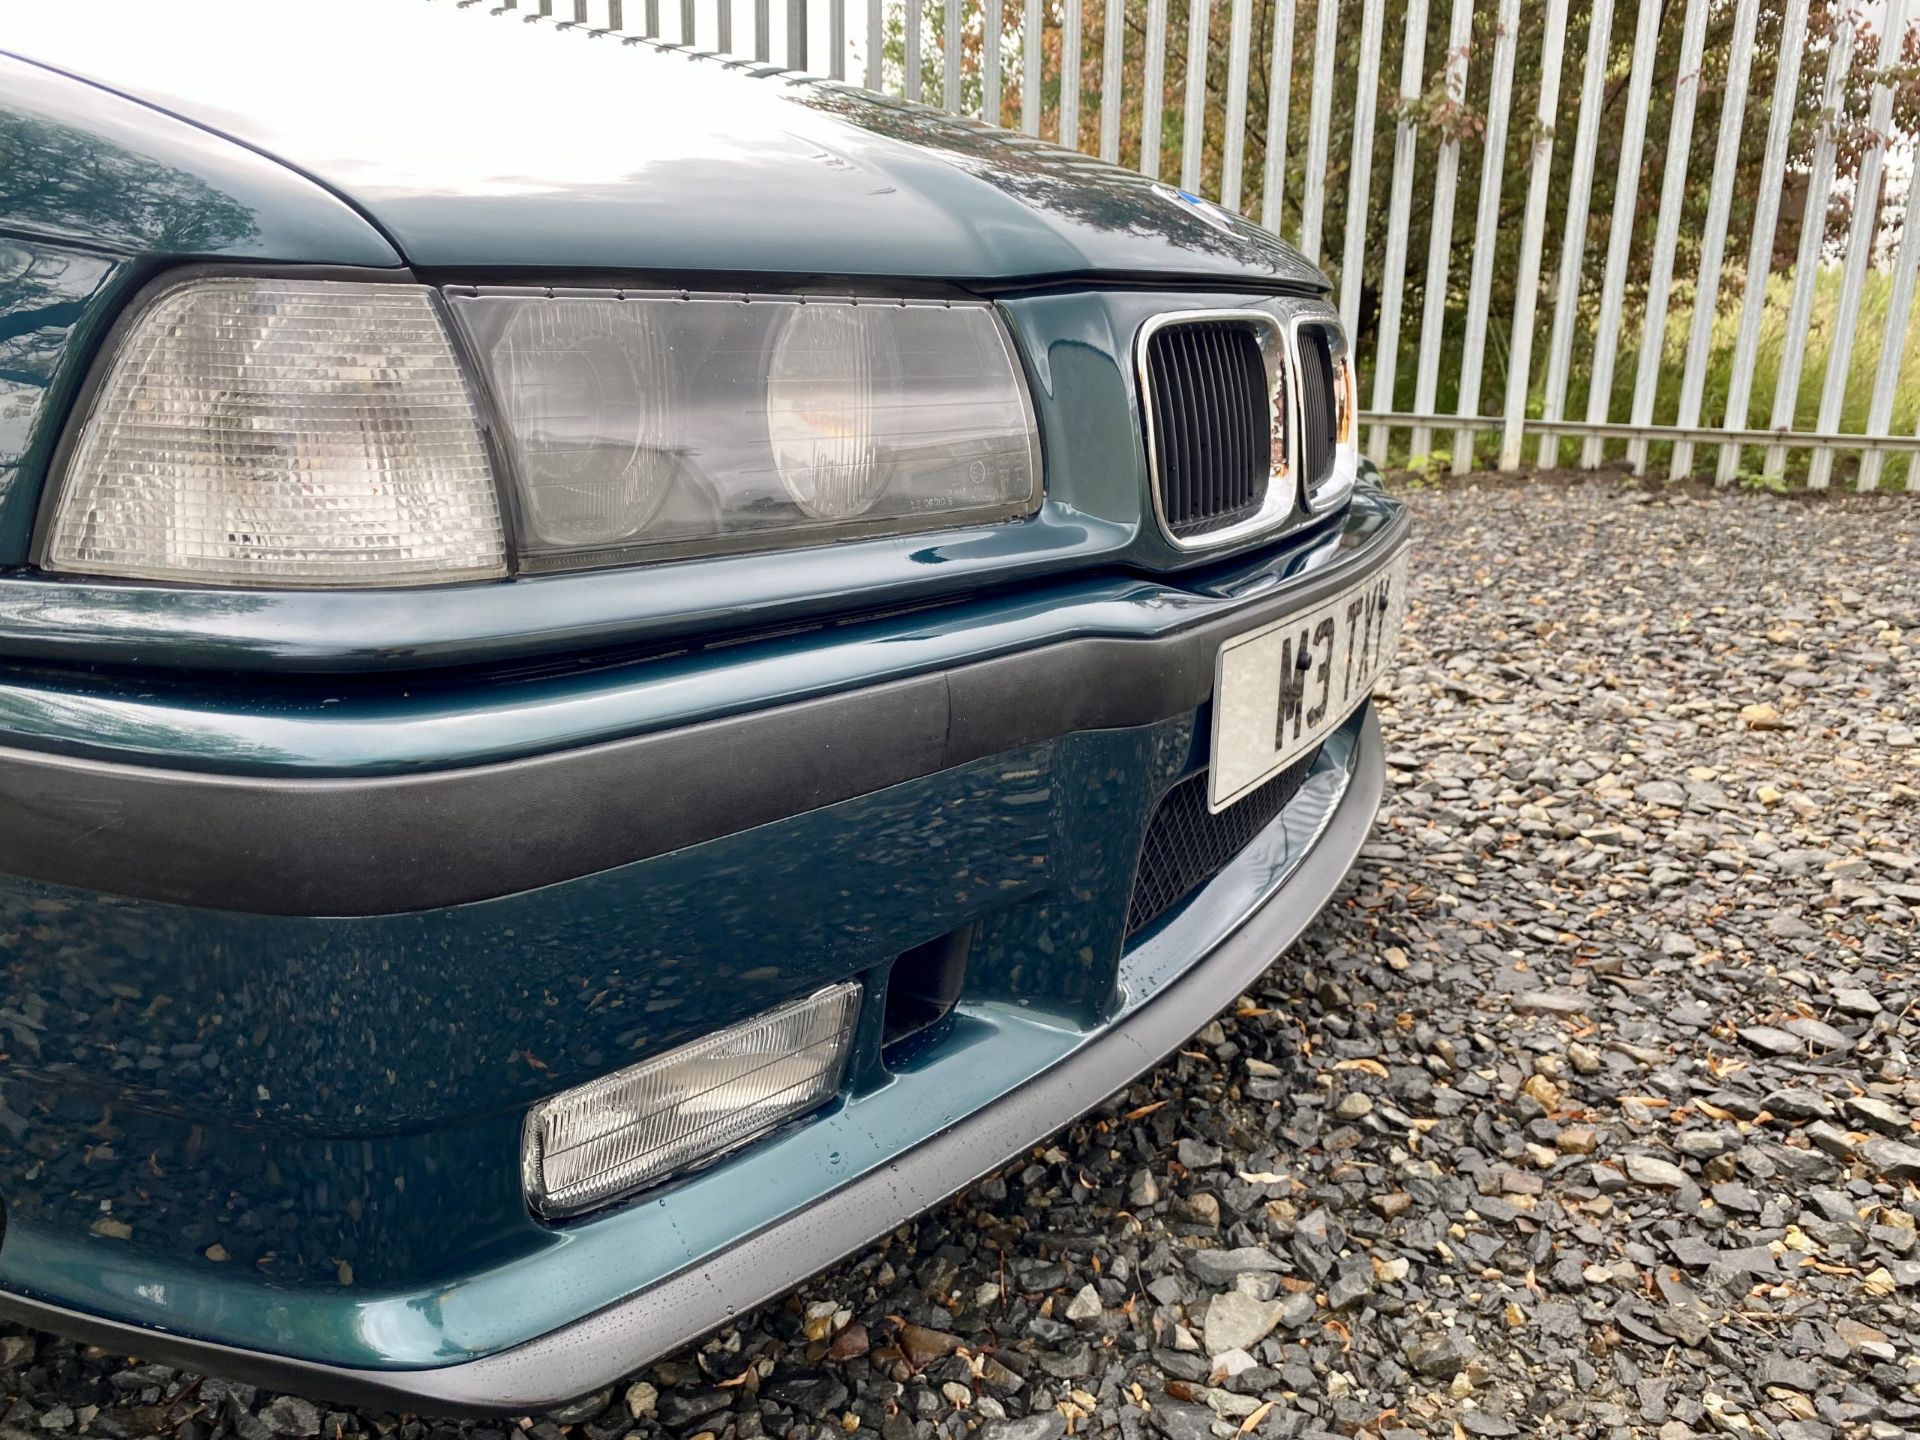 BMW M3 E36 - Image 18 of 46